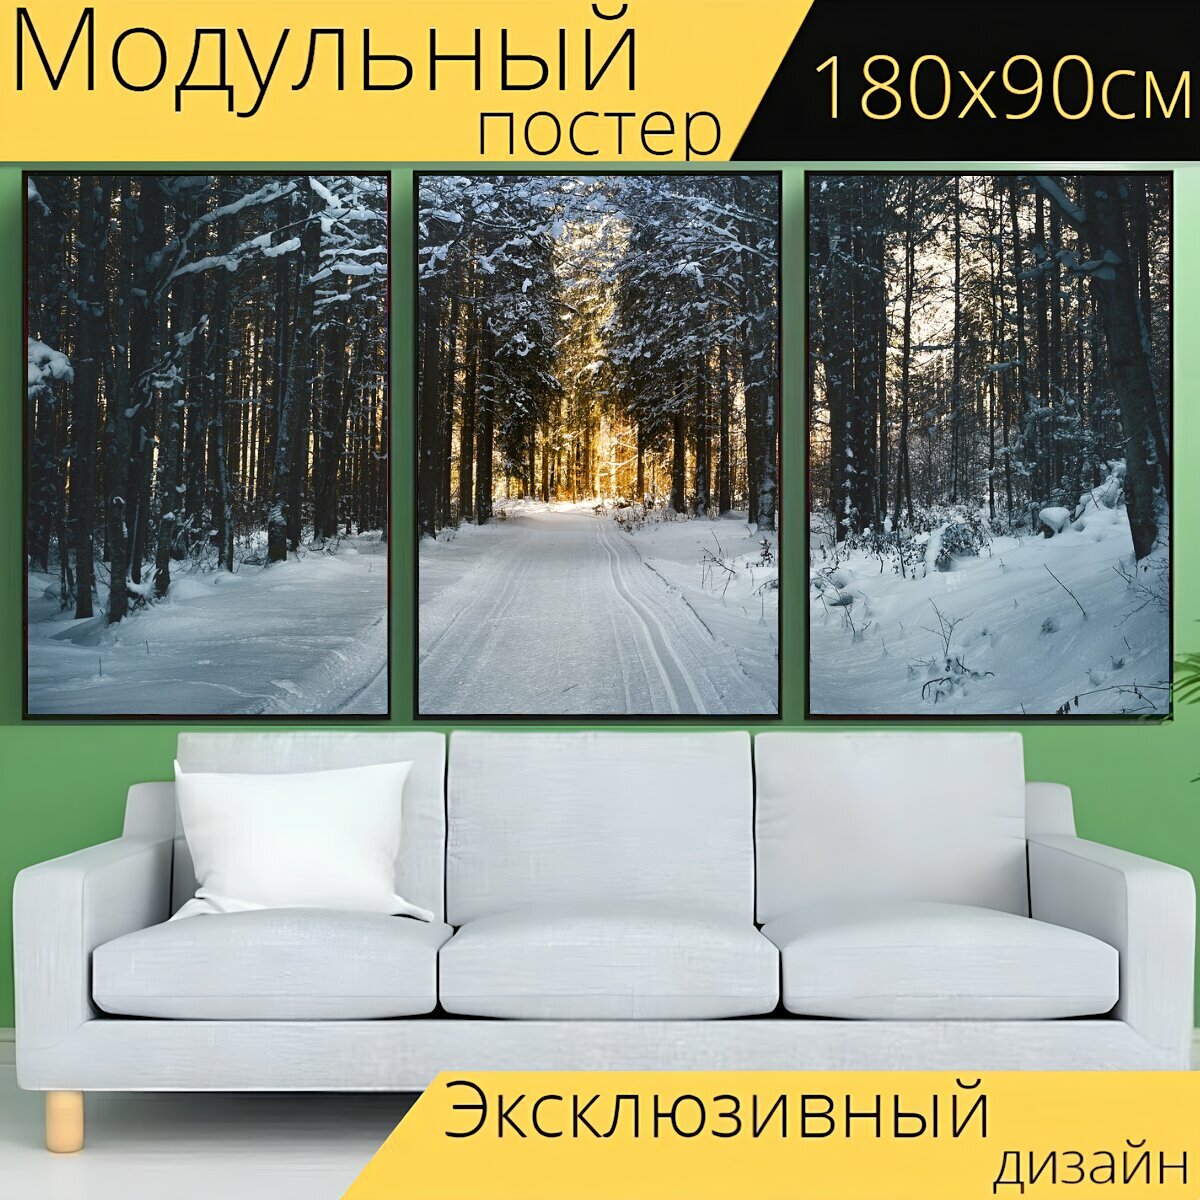 Модульный постер "Лыжные гонки, лес, снег" 180 x 90 см. для интерьера